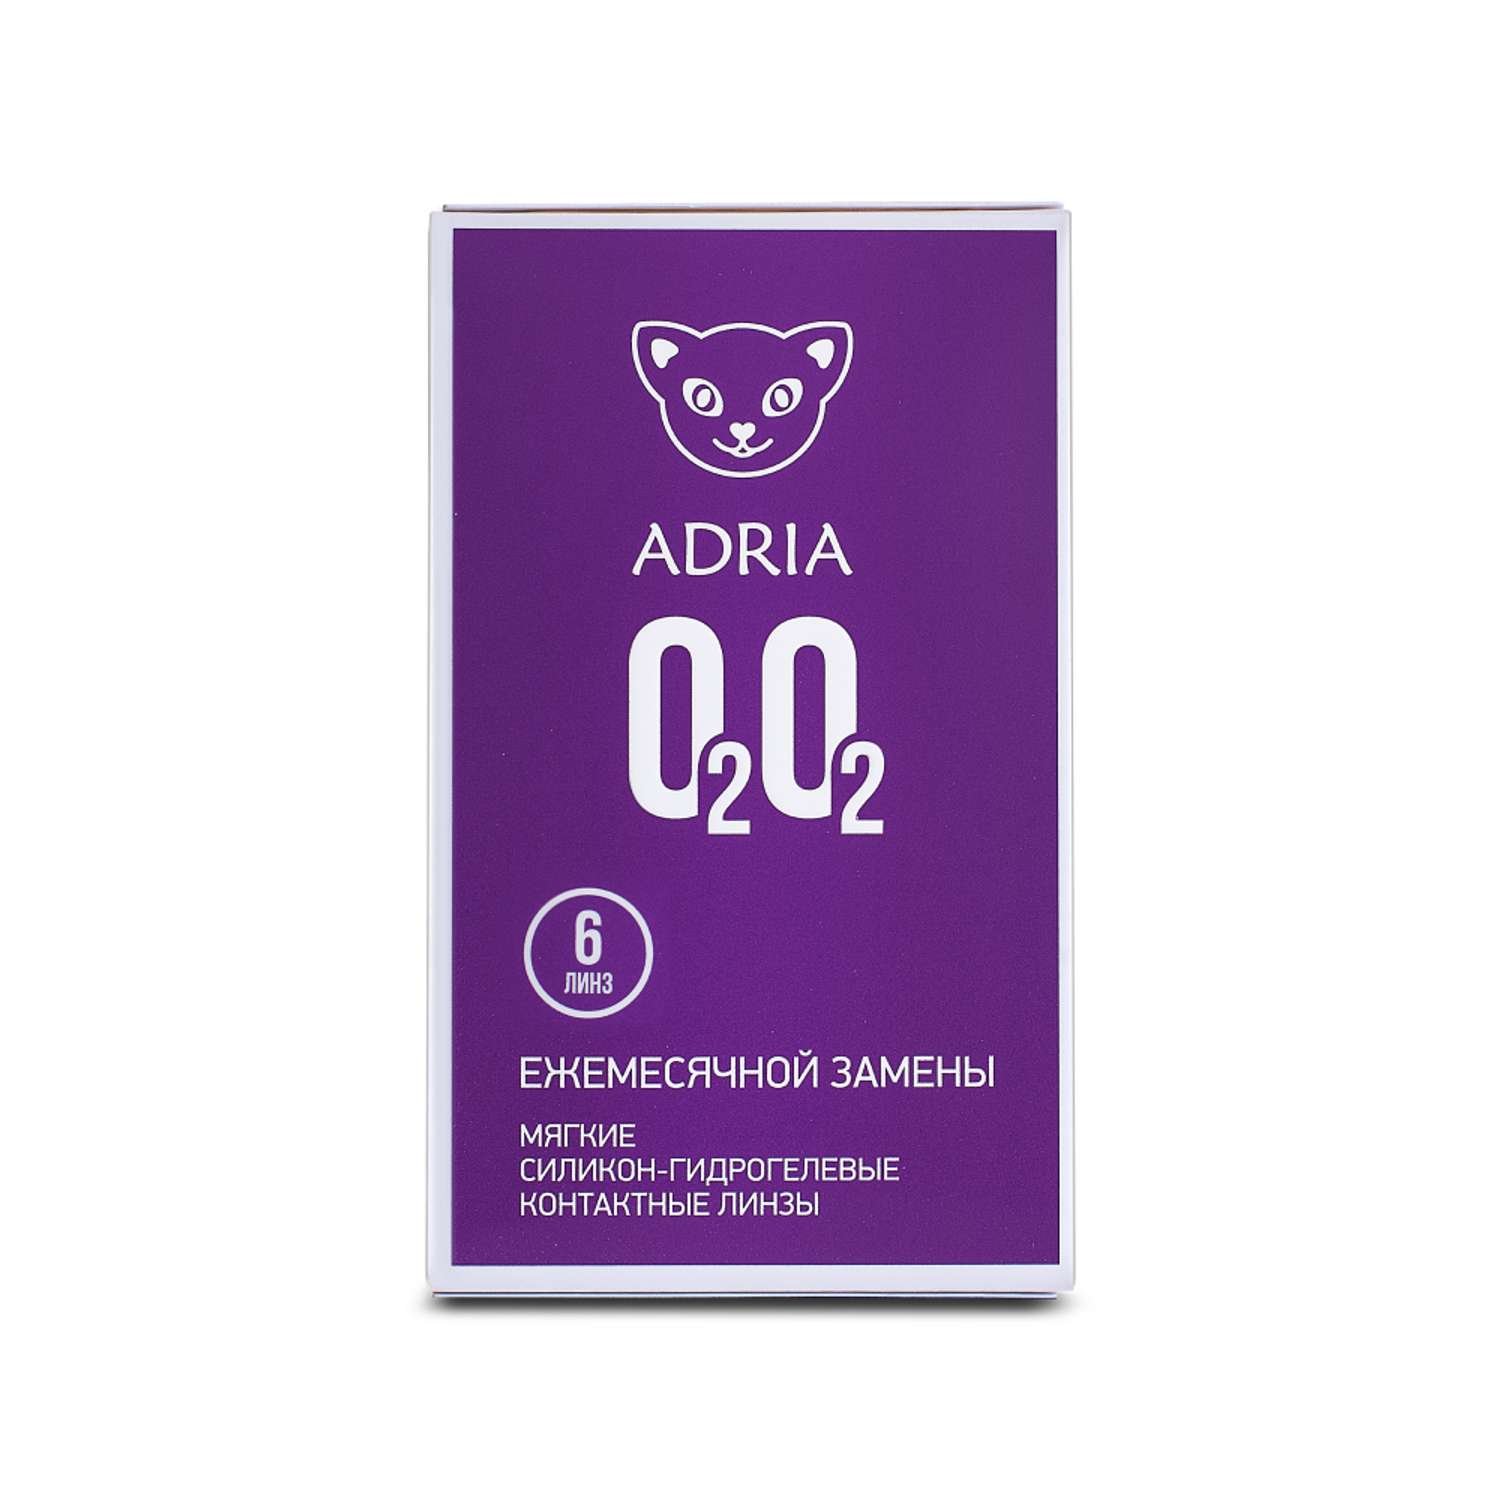 Контактные линзы ADRIA O2O2 6 линз R 8.6 -1.75 - фото 6